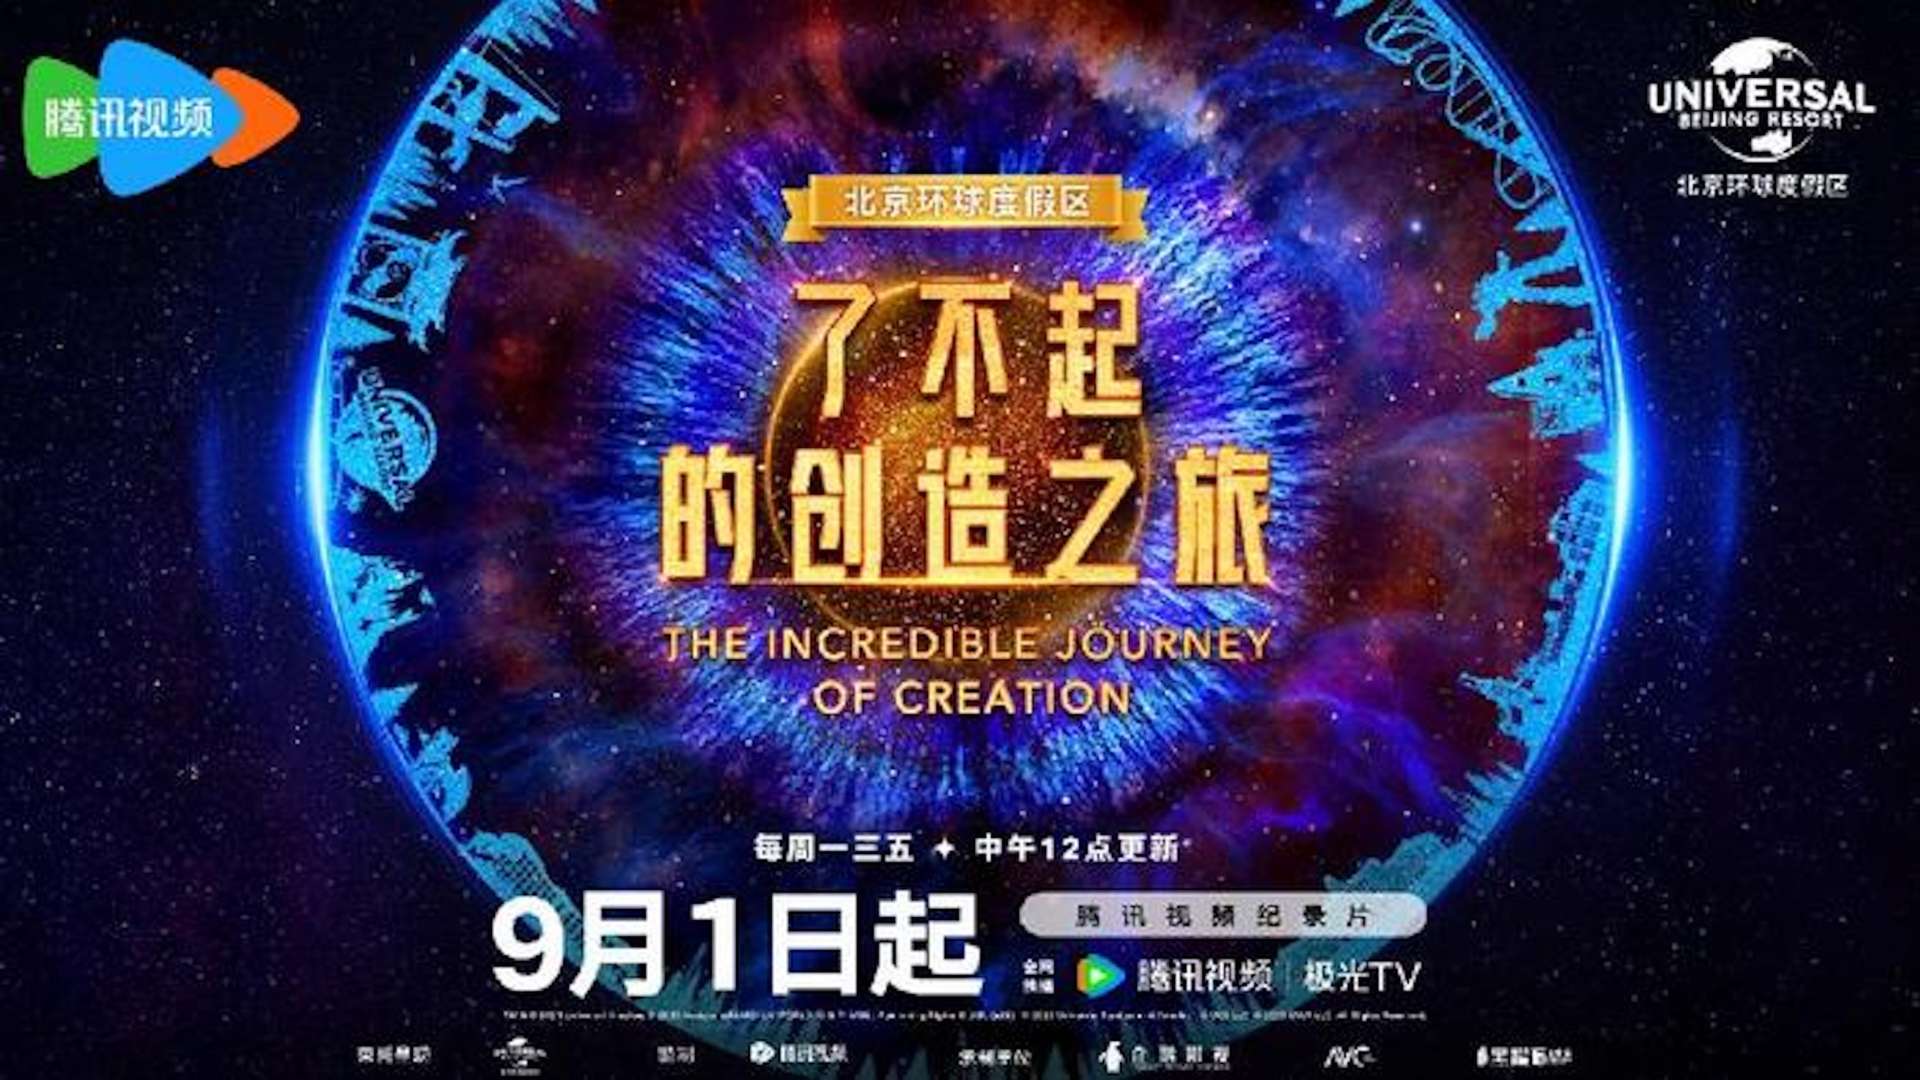 北京环球度假区系列纪录片《了不起的创造之旅》EP7